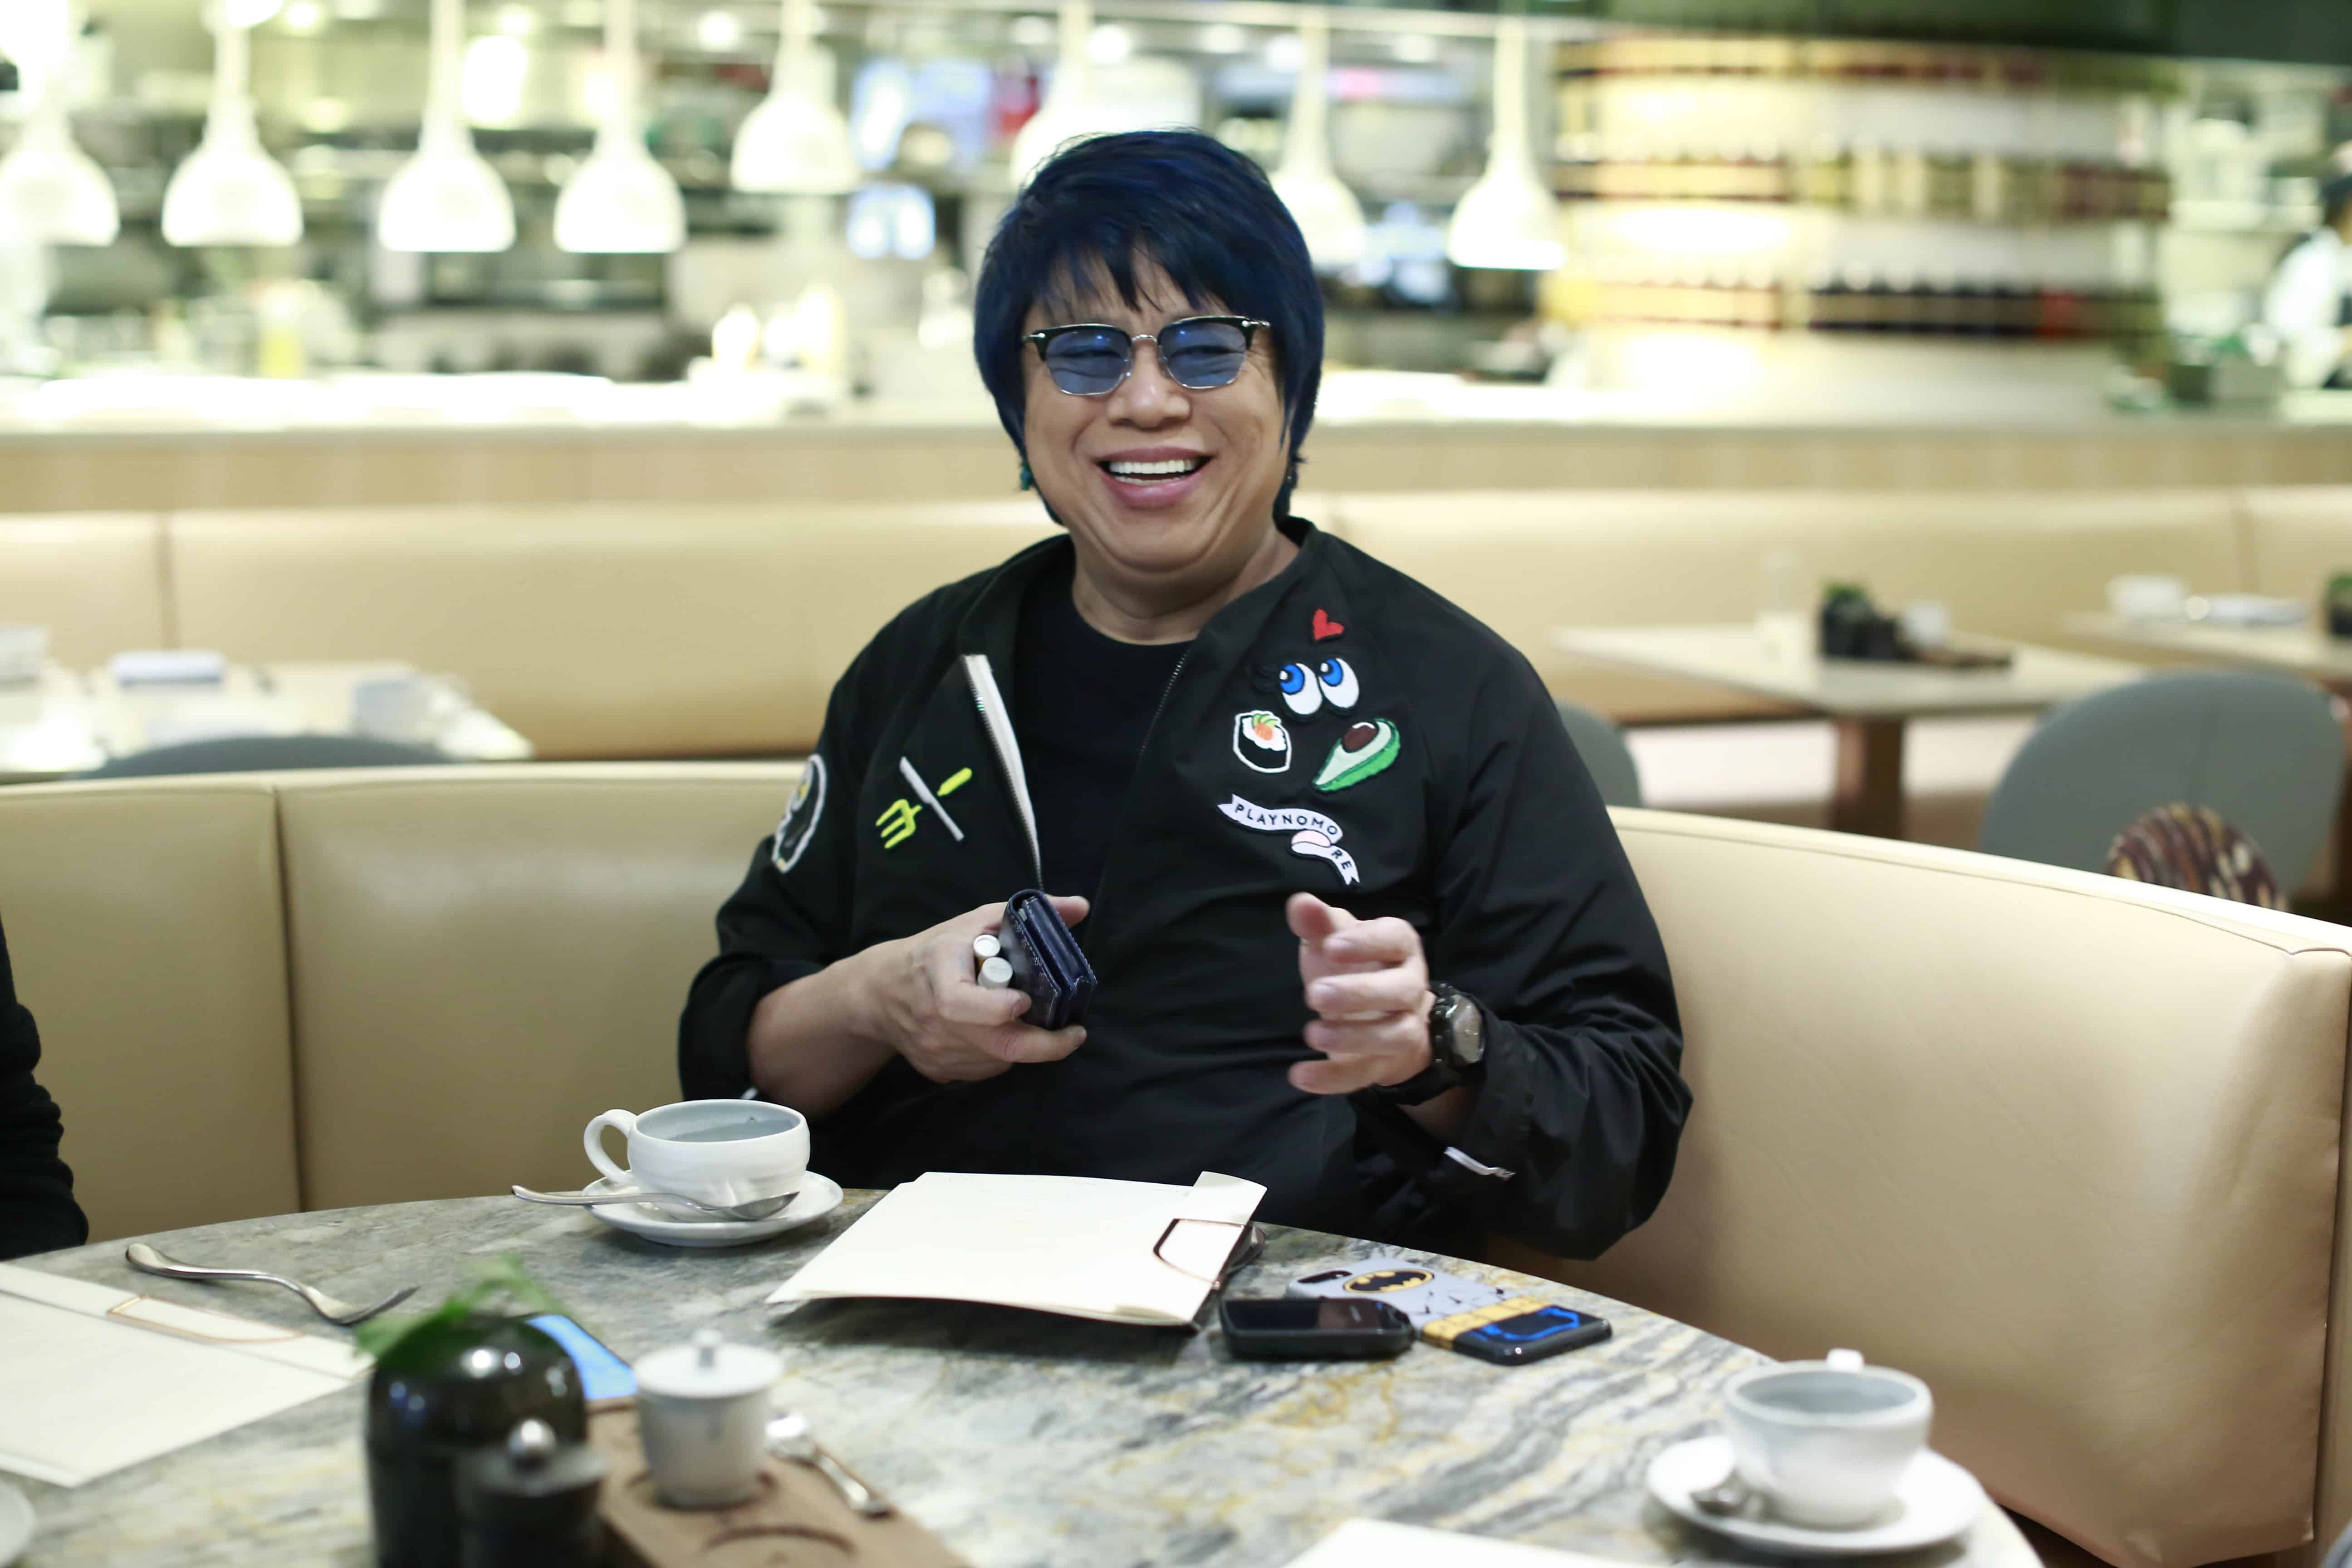 EcoLux☆Lifestyle: Chef Alvin Leung Talks Diabetes